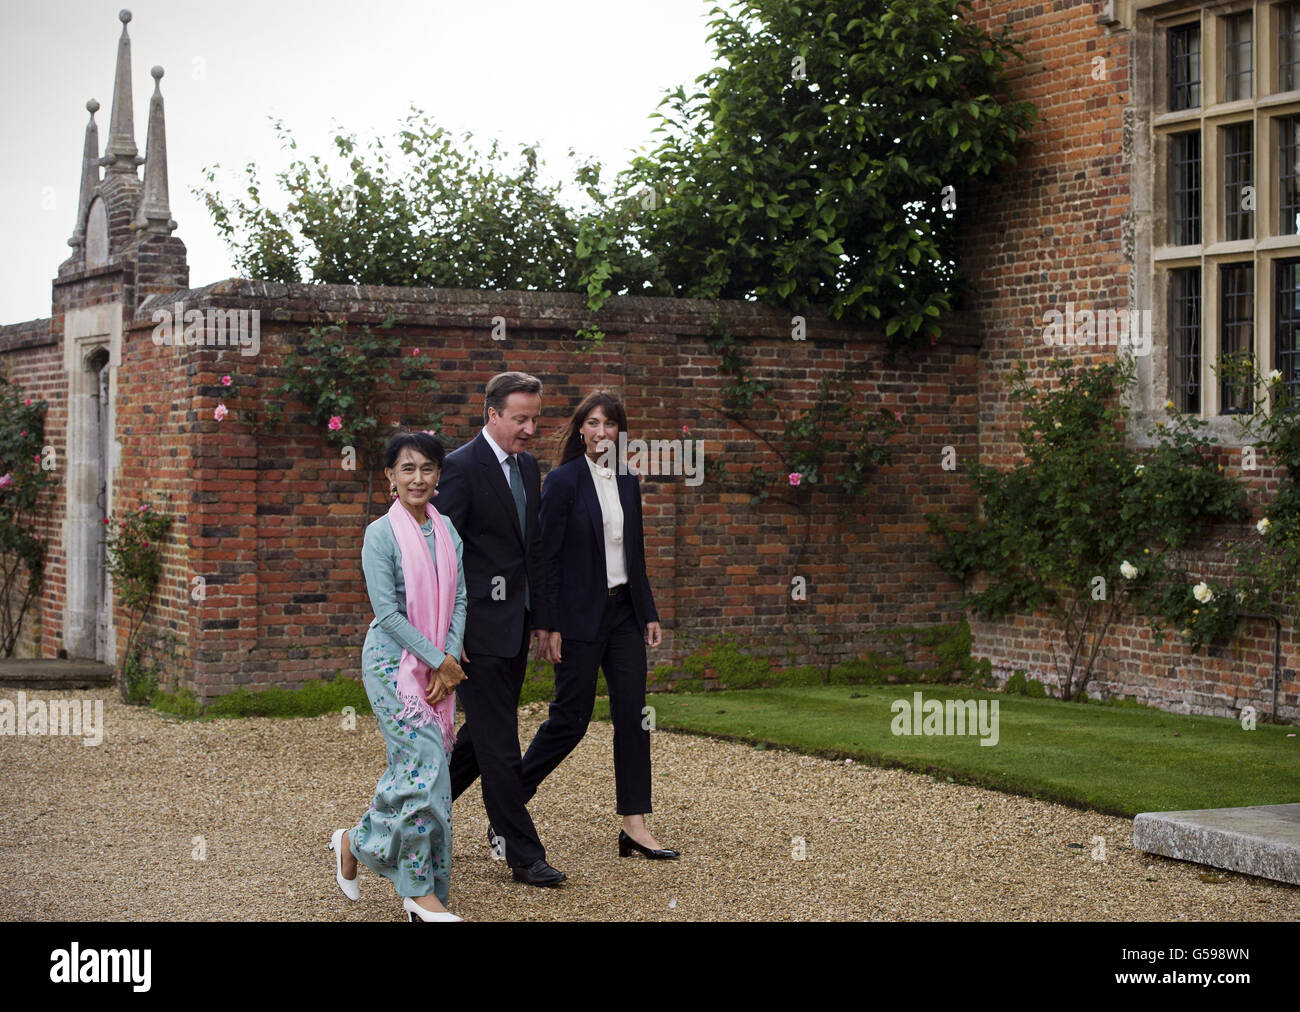 Le Premier ministre David Cameron et sa femme Samantha se promèneront pour accueillir Aung San Suu Kyi, la militante pro-démocratie birmane, à Chequrs, la résidence officielle du Premier ministre. Banque D'Images